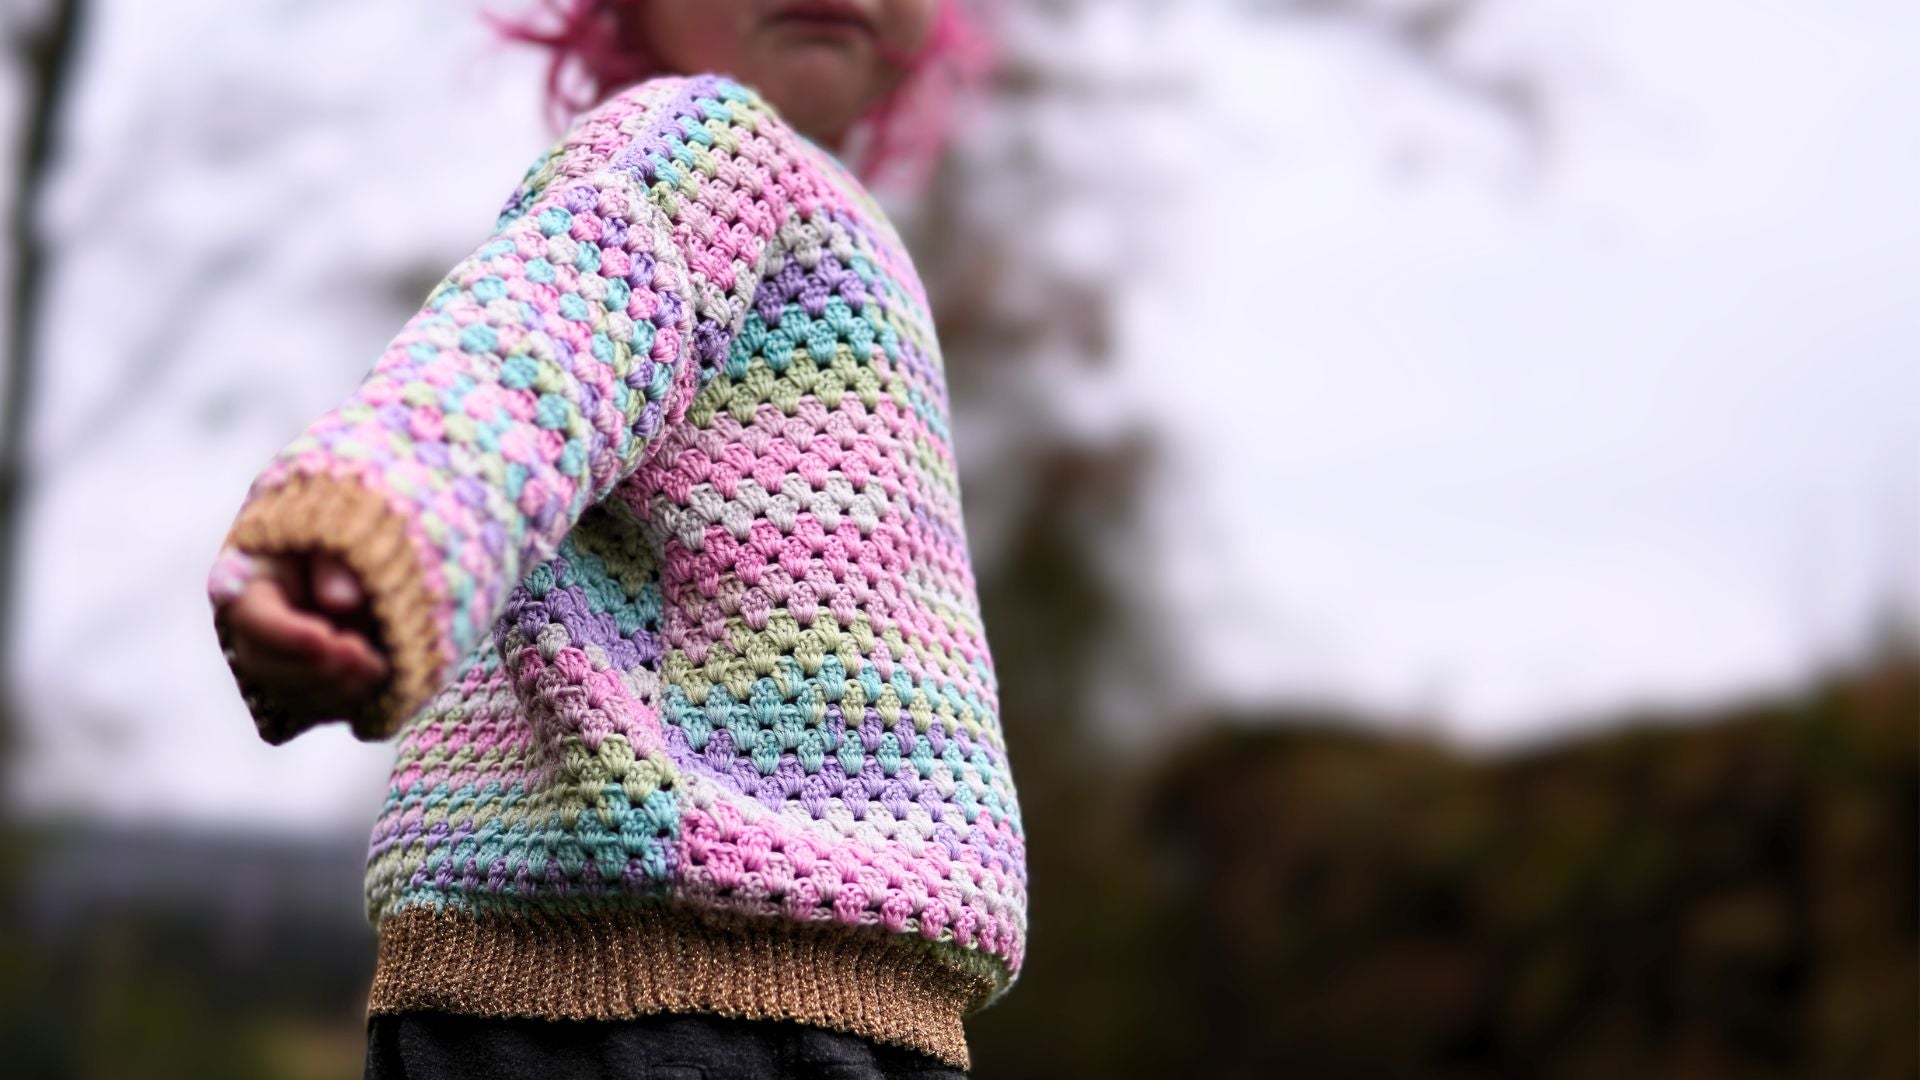 Crocheted Sweater in Granny Stitch